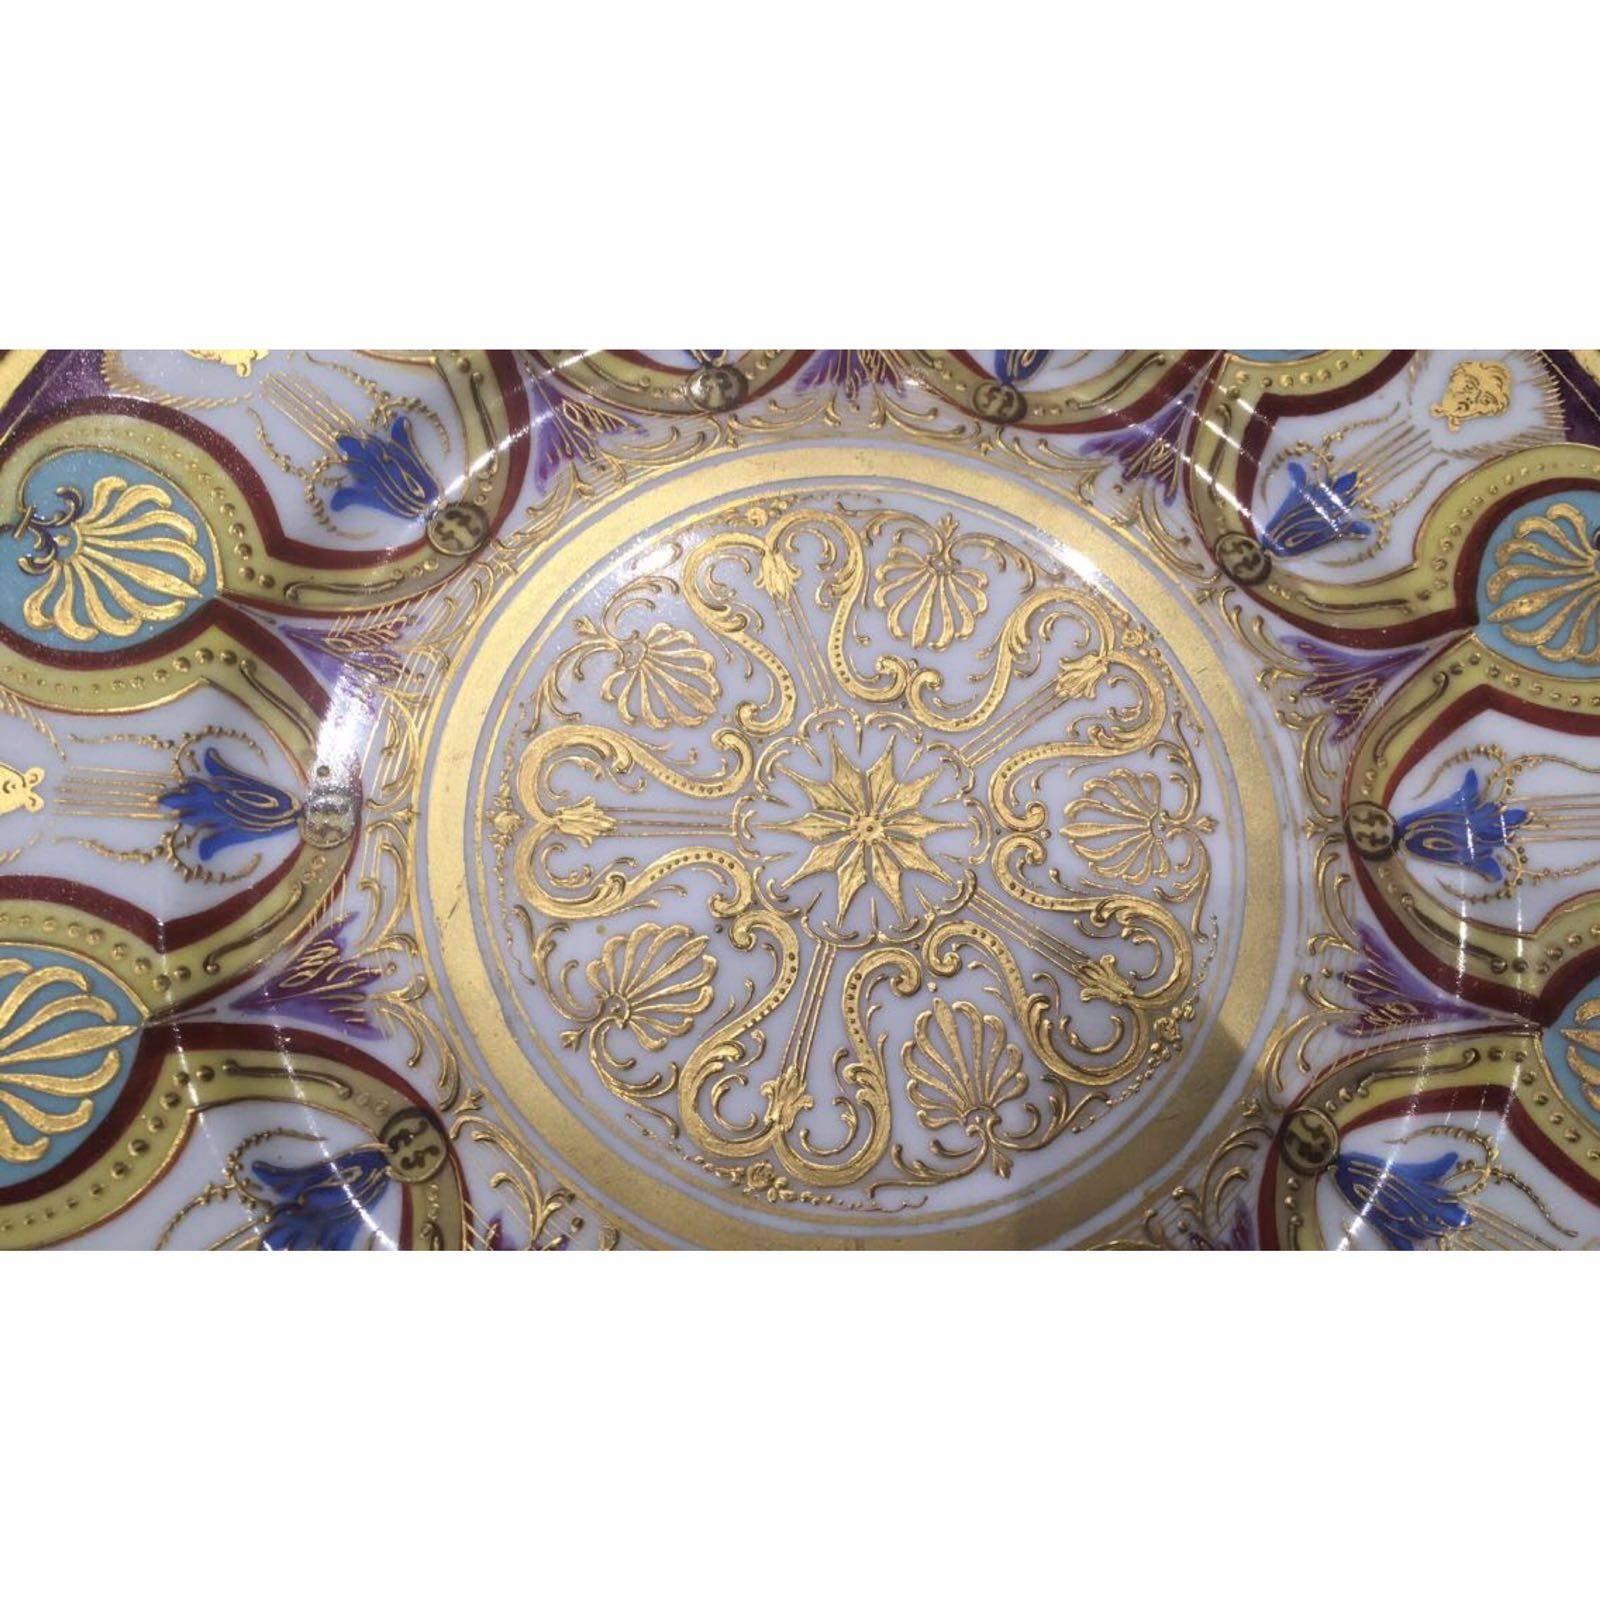 19th century Me Imple de Sevres porcelain plates.

Measure: D 24 cm
H 2 cm.